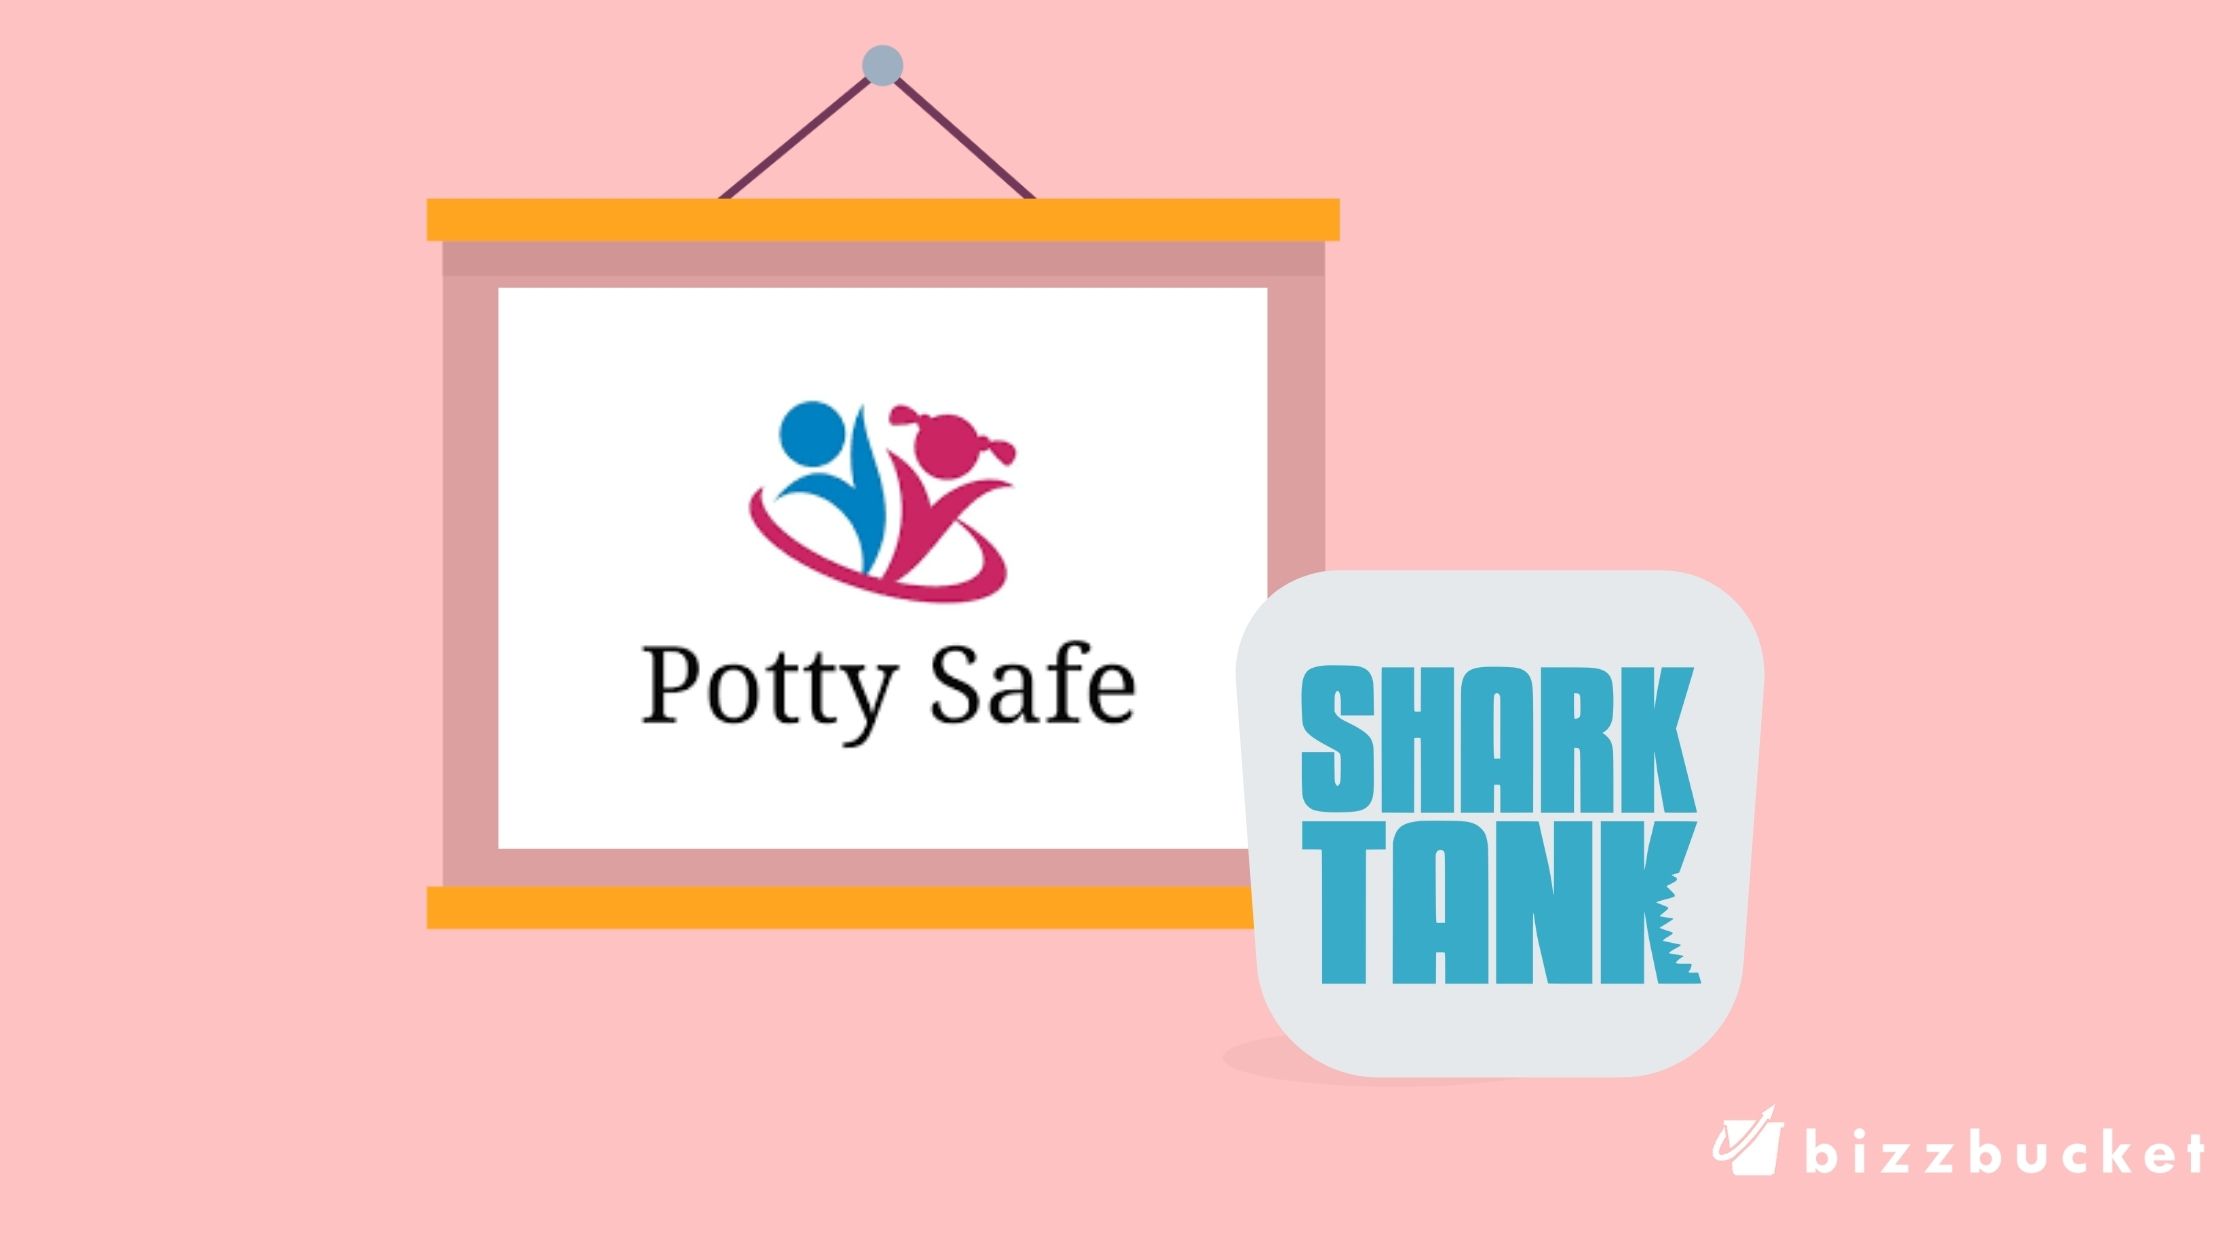 Potty Safe logo